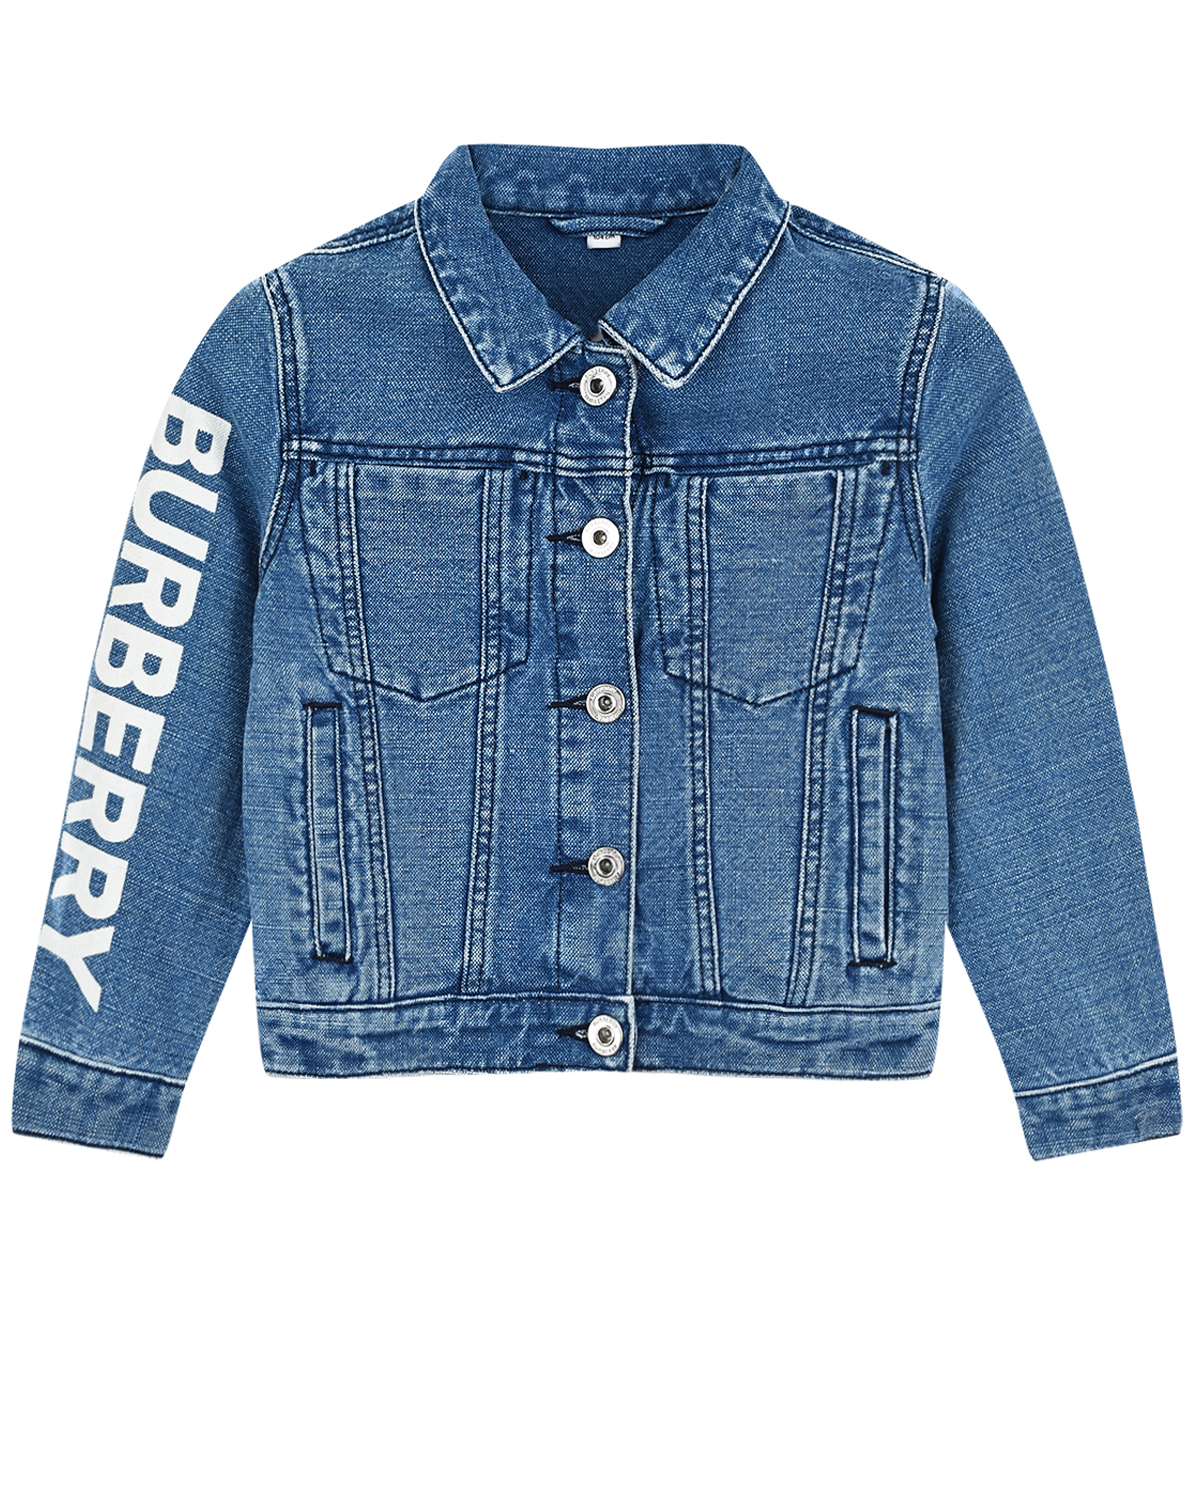 Синяя джинсовая куртка с логотипом на рукаве Burberry детская, размер 98, цвет синий - фото 1